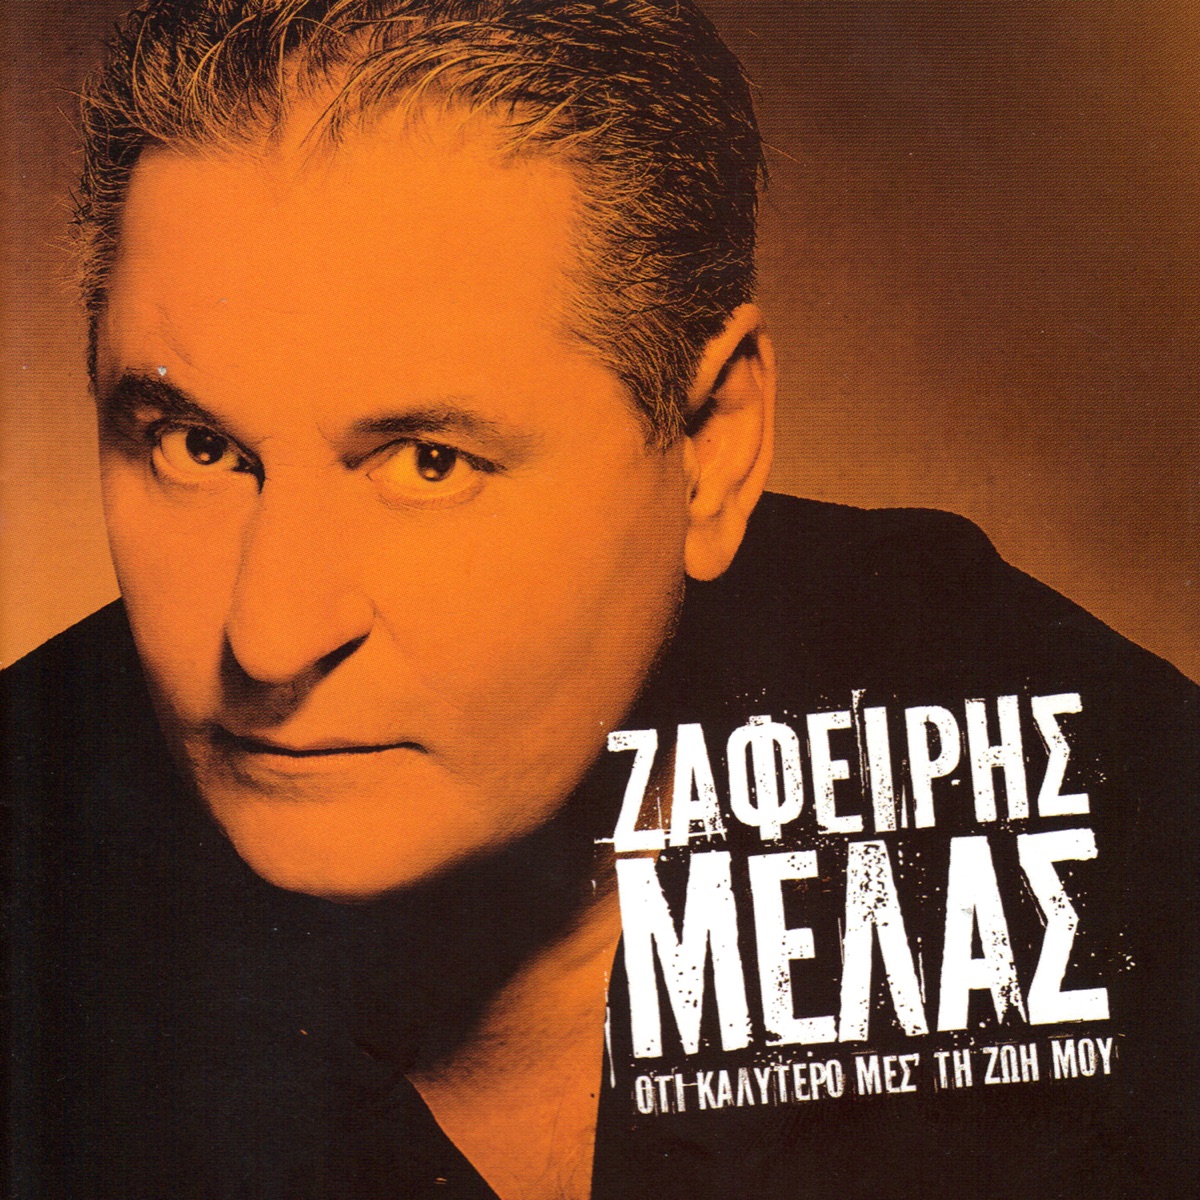 Oti Kalitero Mes Ti Zoi Mou - Album by Zafeiris Melas - Apple Music